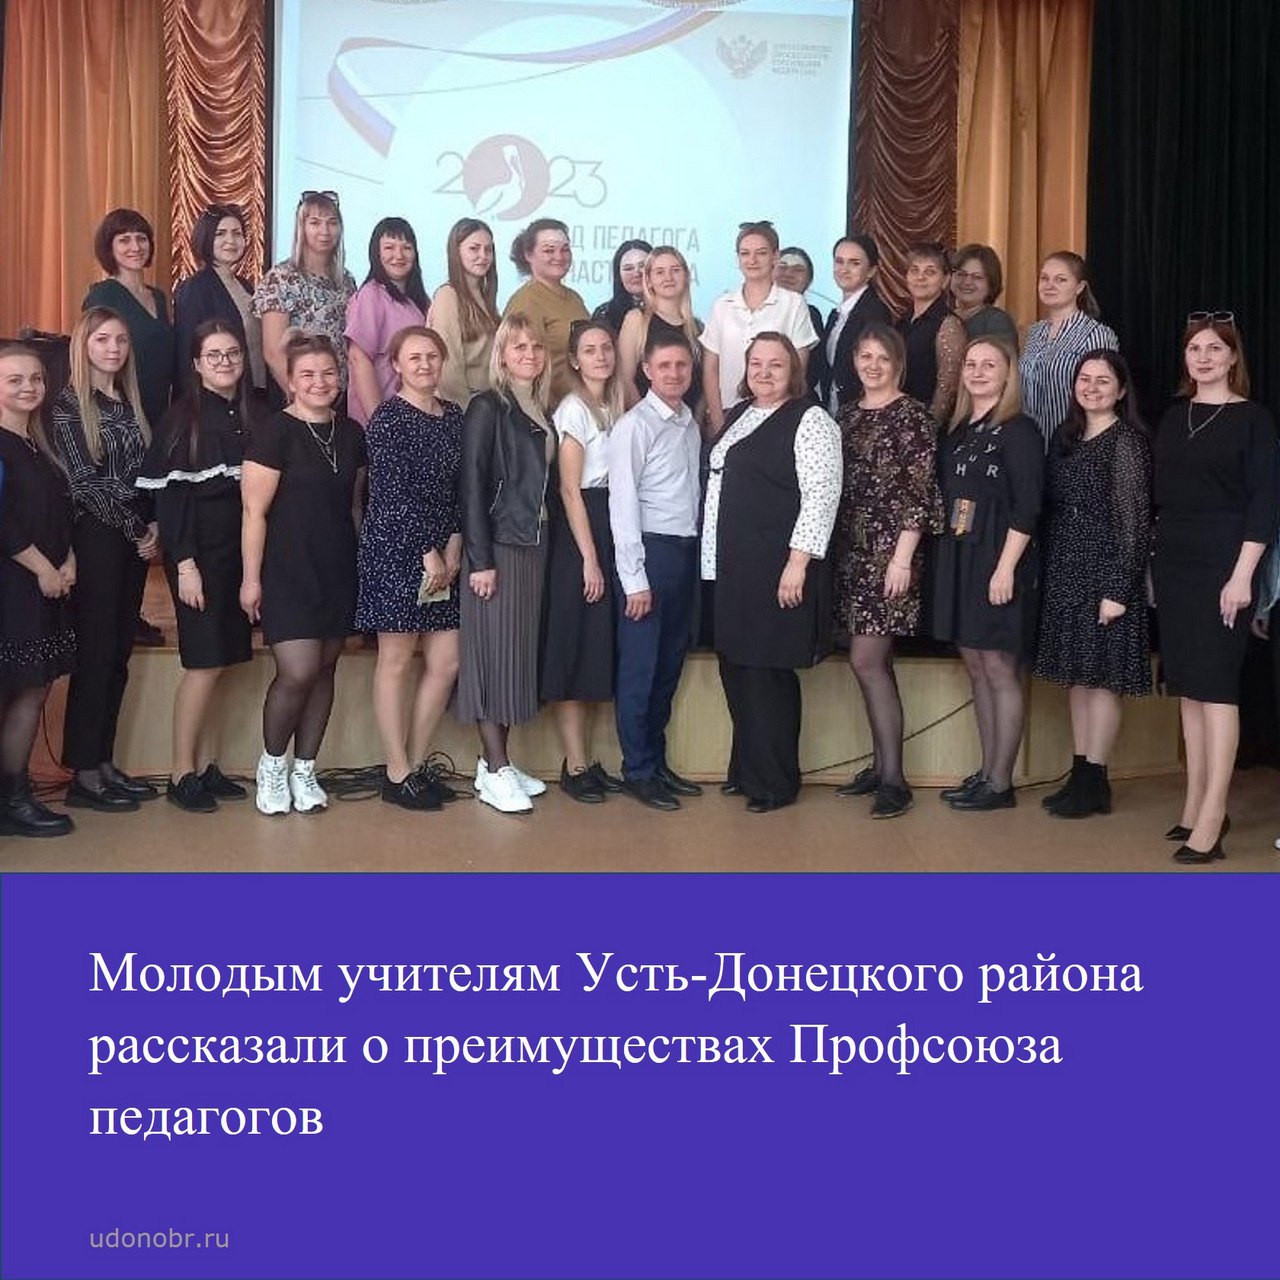 Молодым учителям Усть-Донецкого района рассказали о преимуществах Профсоюза педагогов